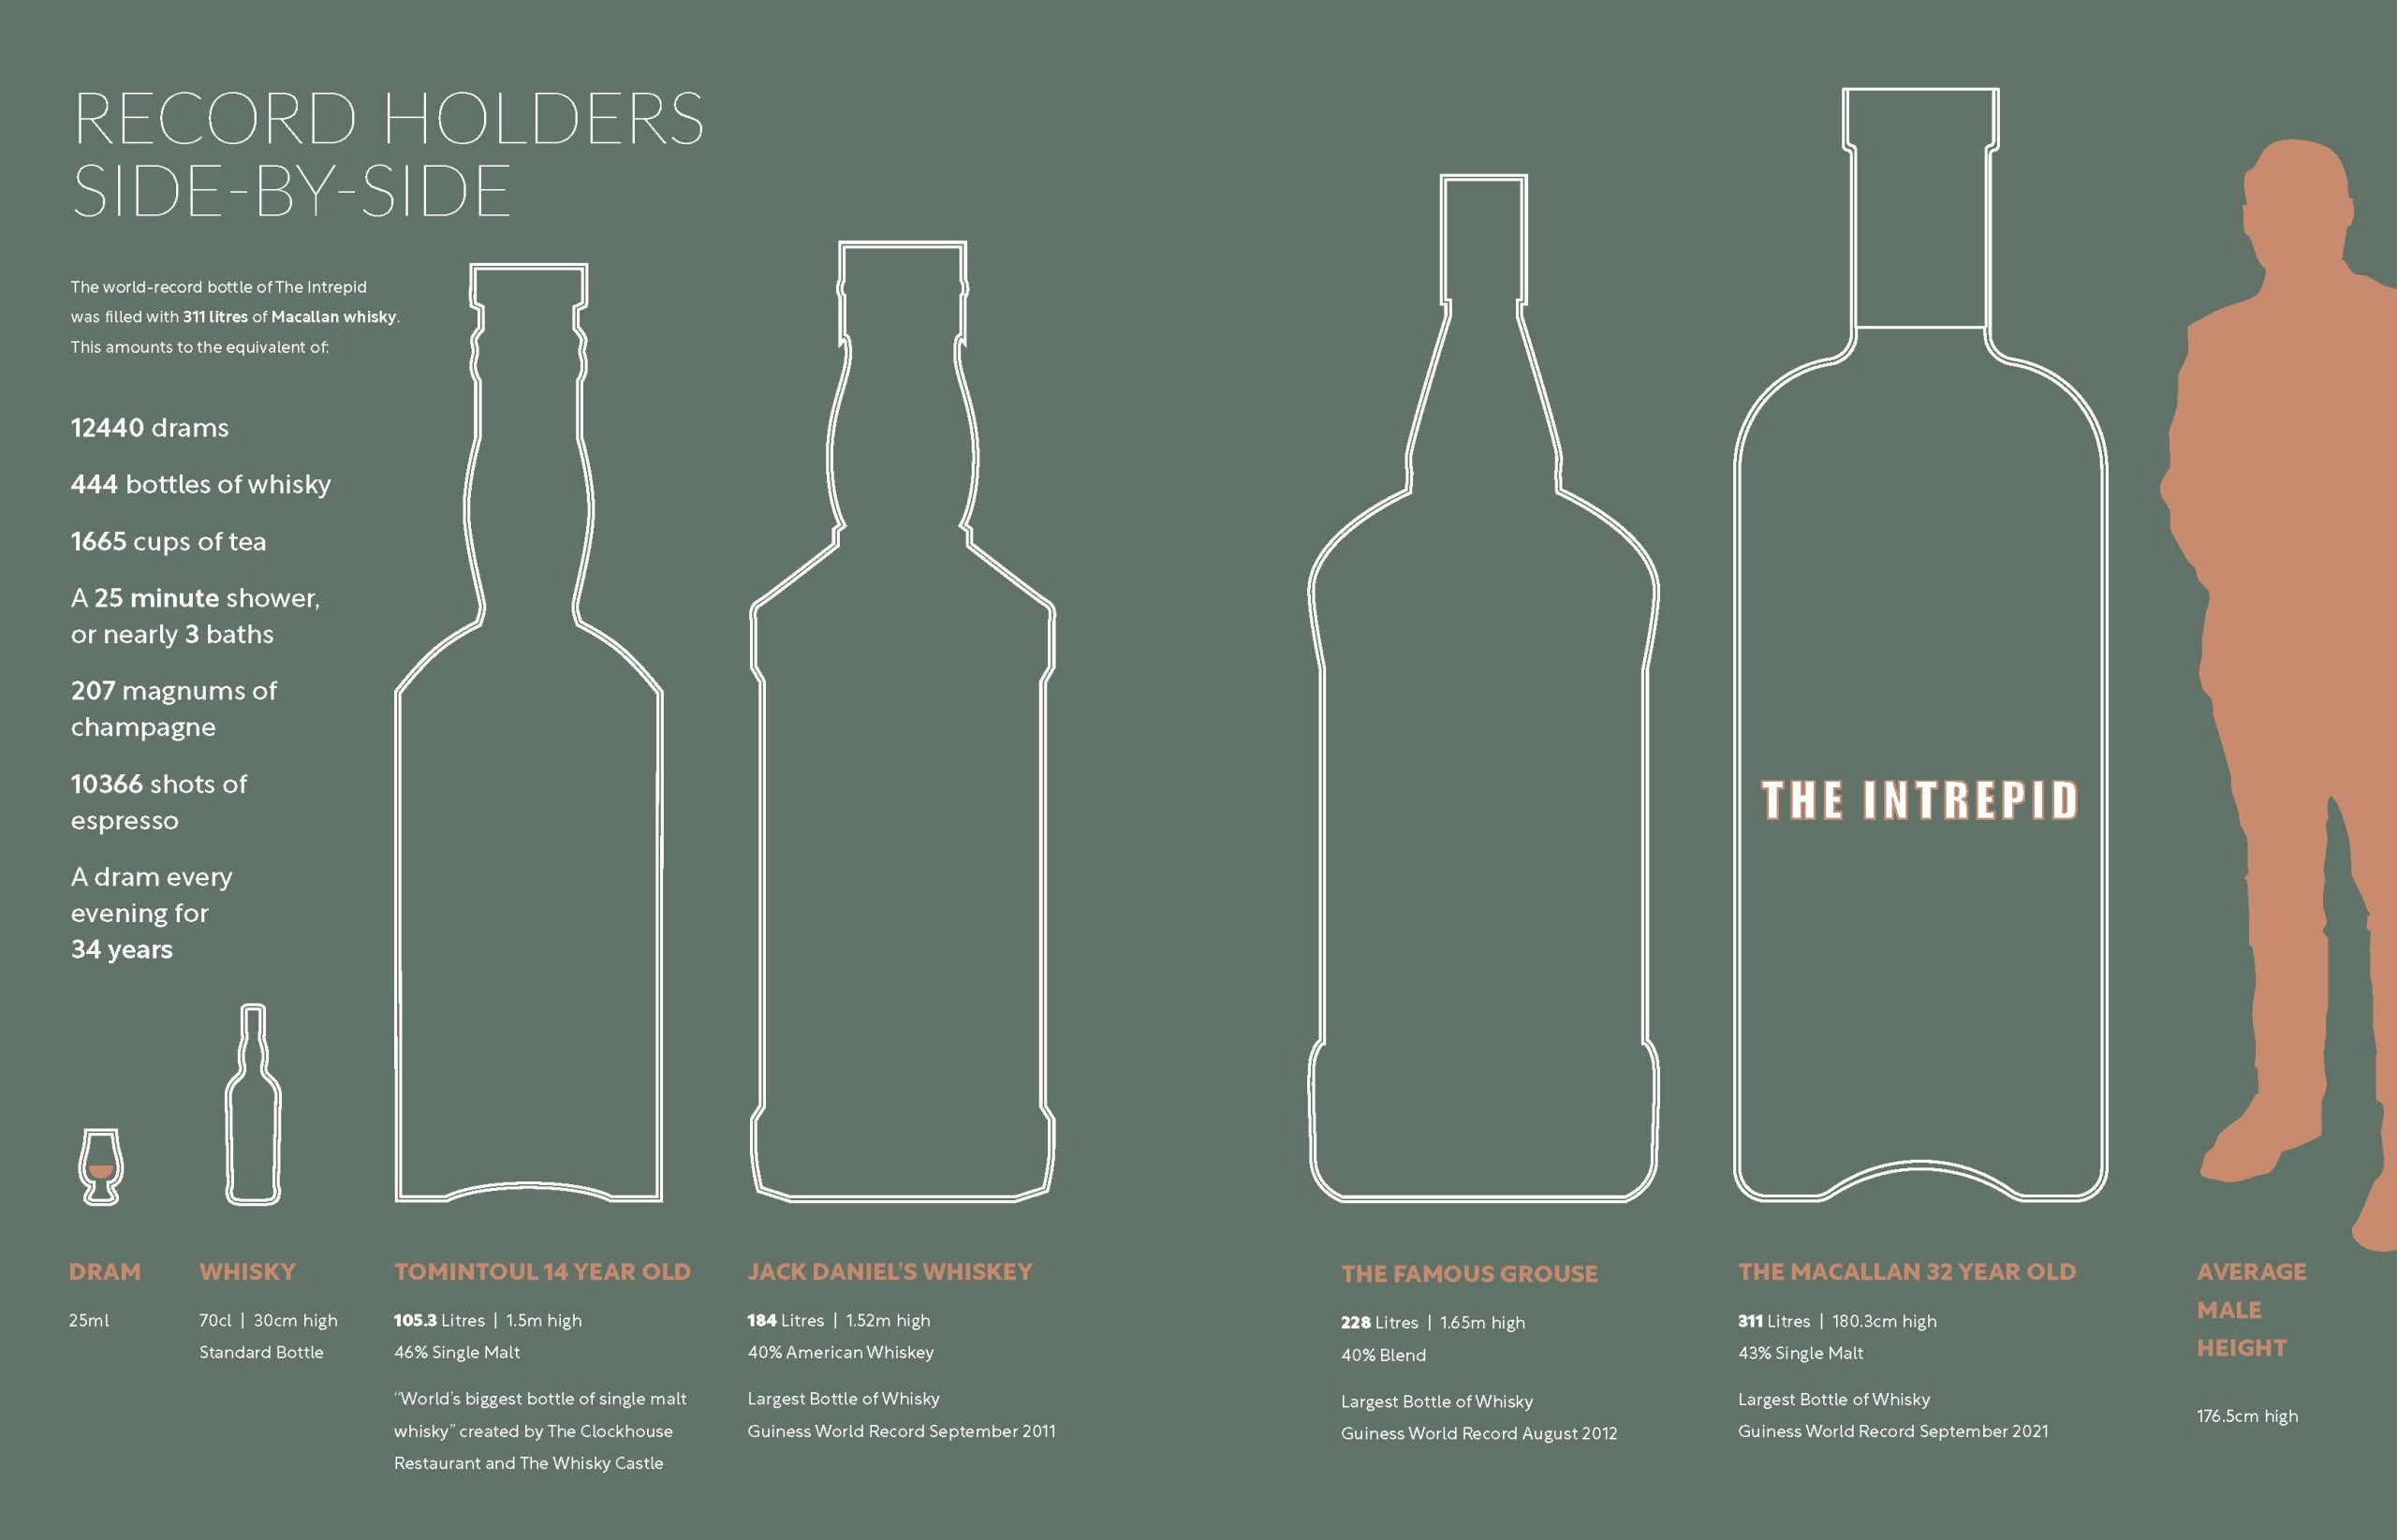 Az infógrafika remekül illusztrálja a világ legnagyobb whiskysüvegeinek méretét és azt, hogy mekkora egy pohárral és egy átlagos üveggel.